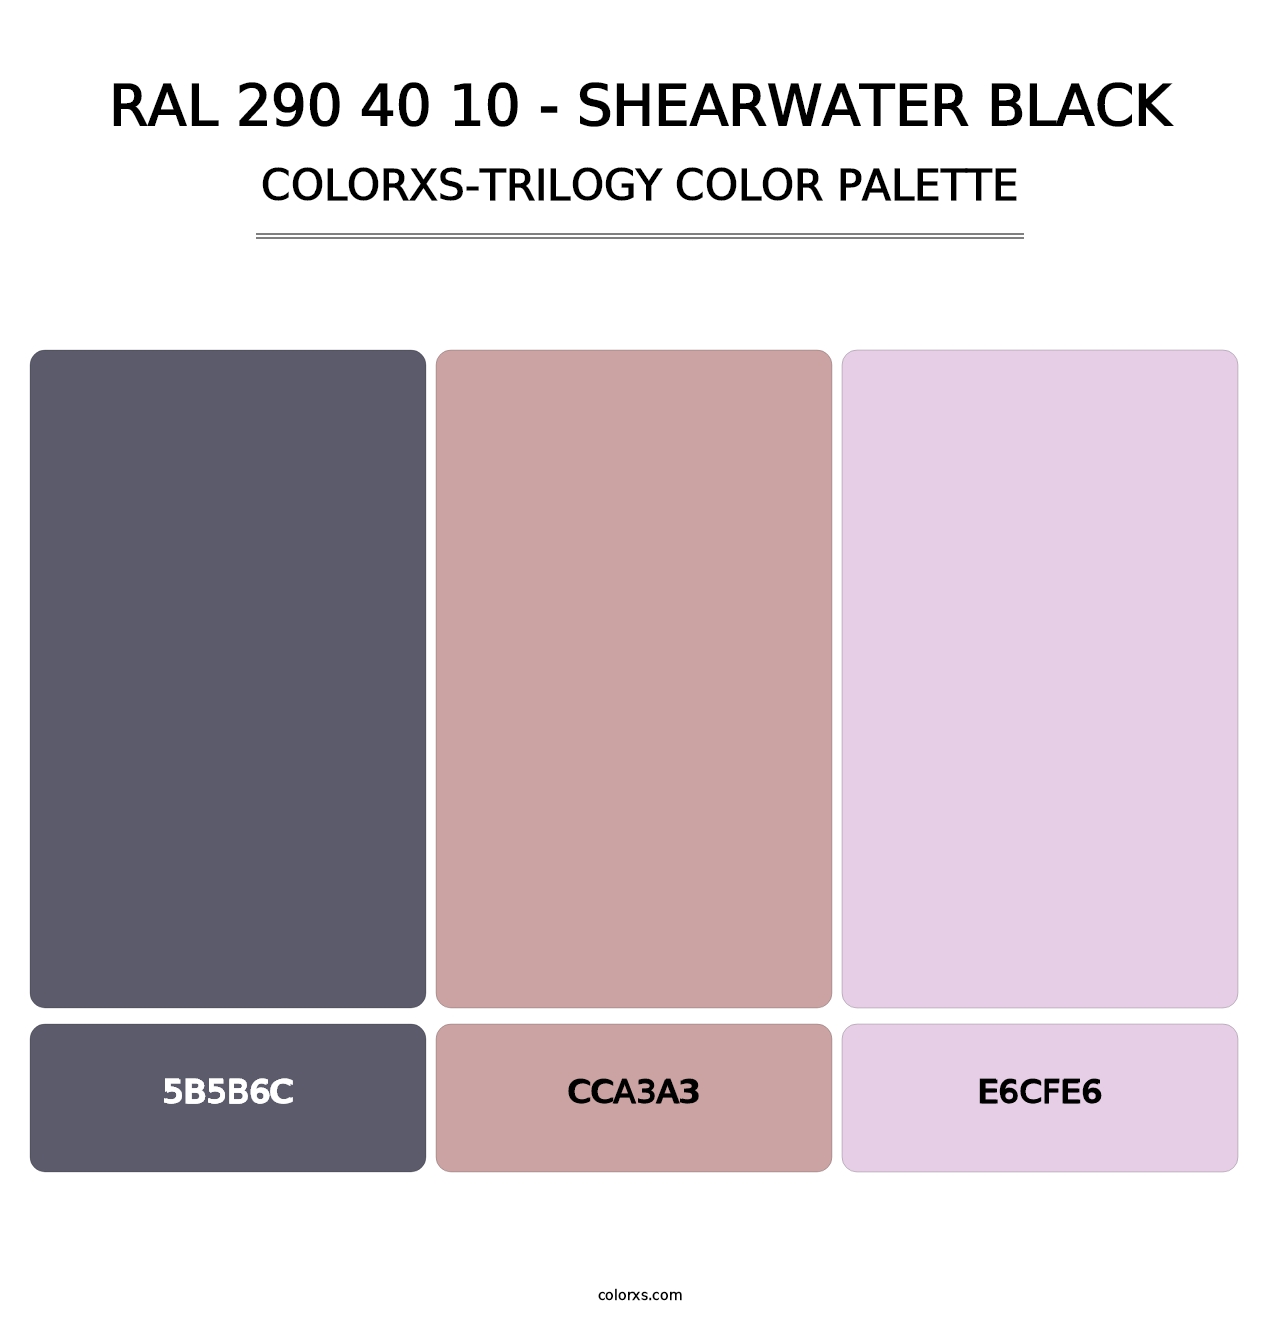 RAL 290 40 10 - Shearwater Black - Colorxs Trilogy Palette